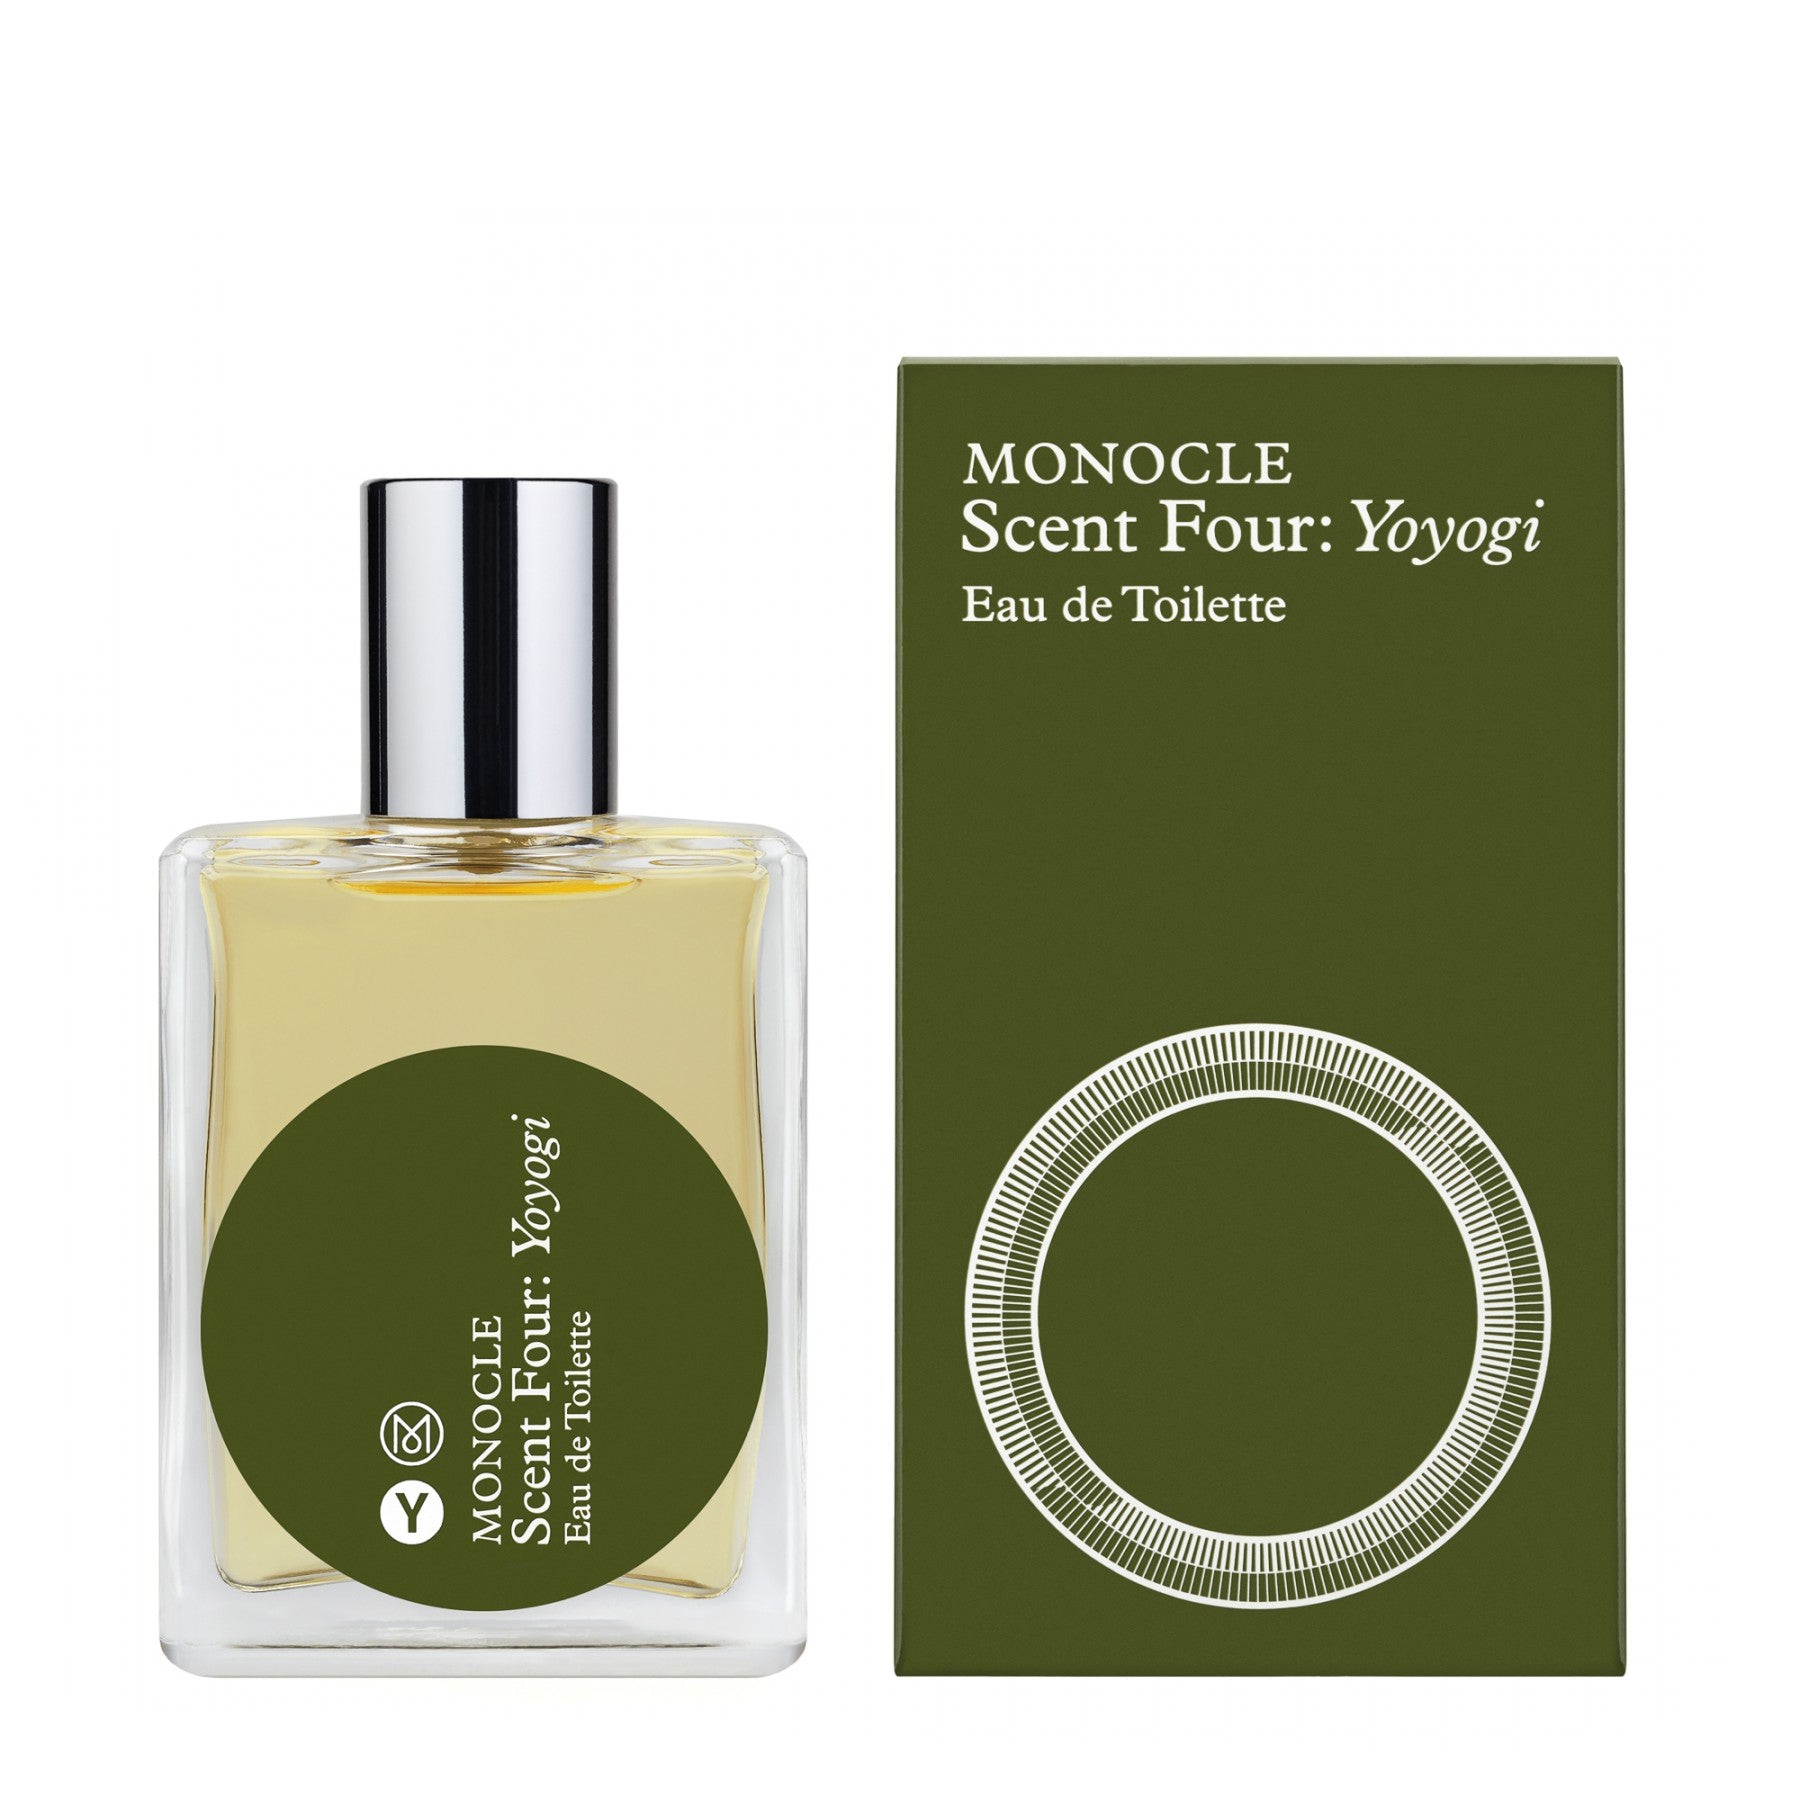 CDG Parfum - Monocle Scent Four Yoyogi Eau de Toilette - (50ml natural spray) view 2